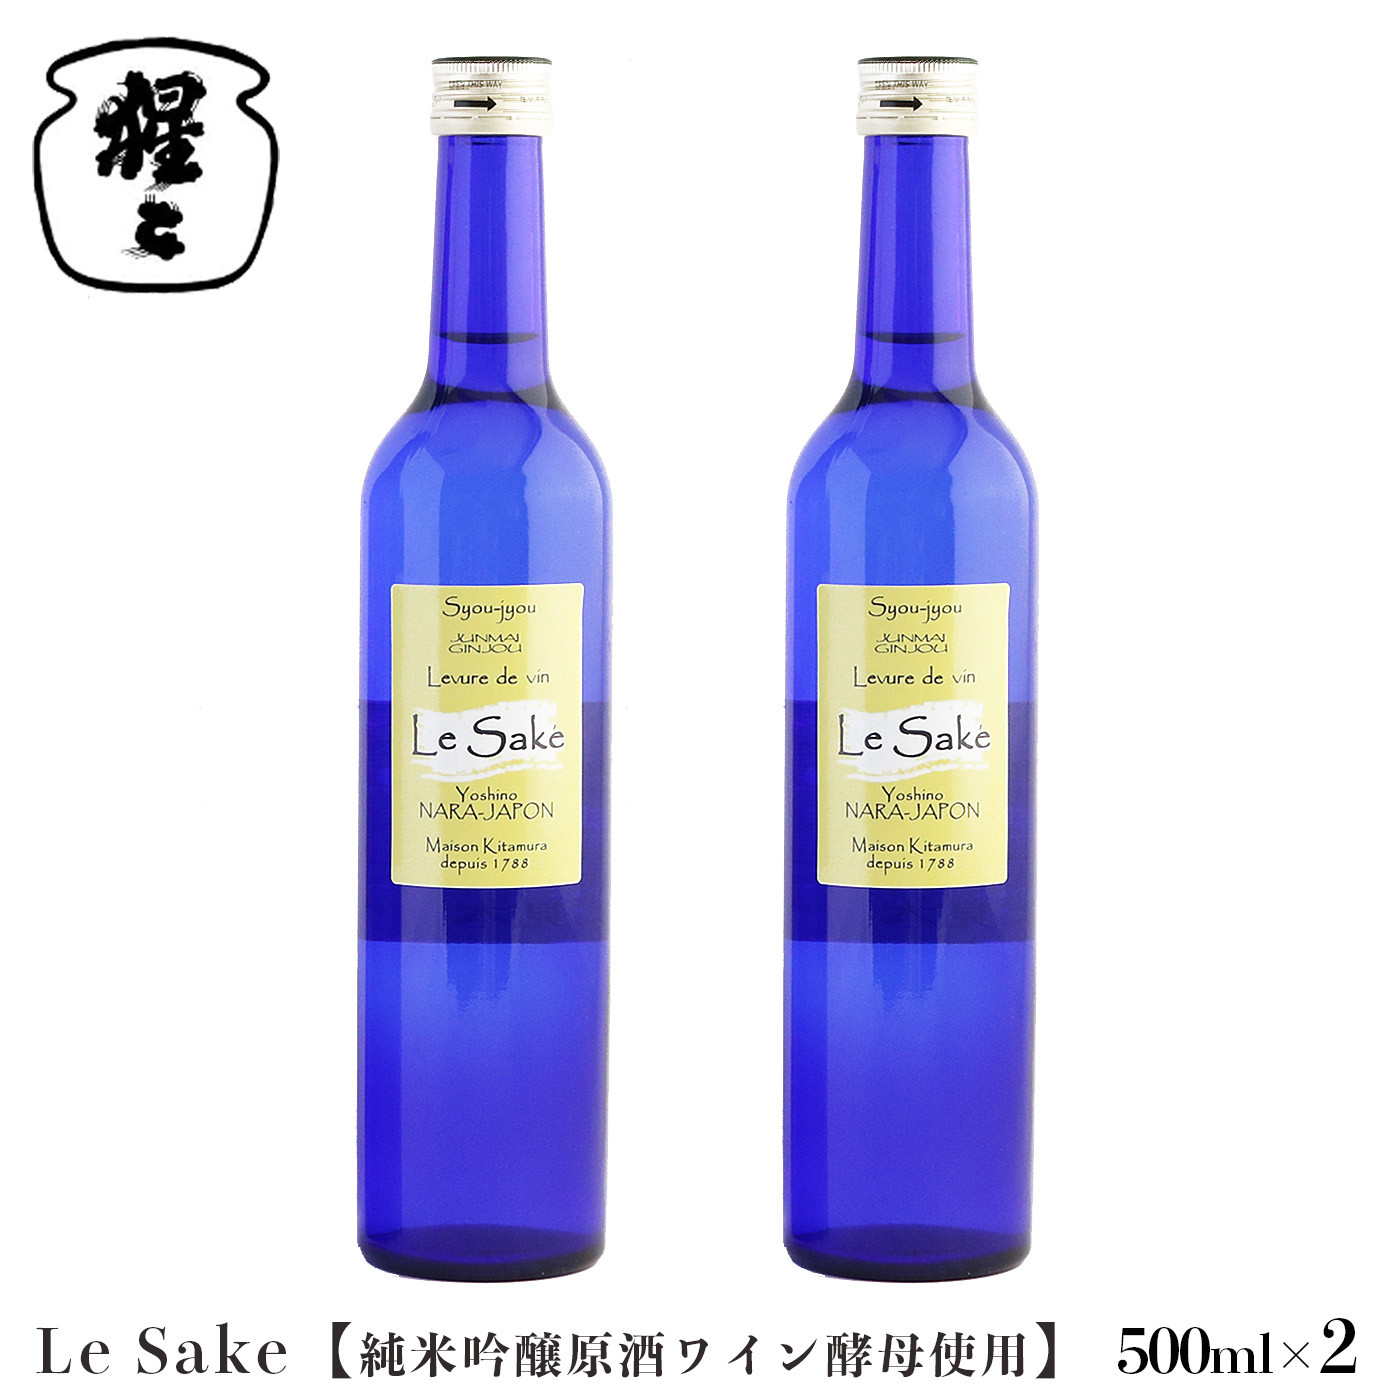 
純米吟醸 Le-Sake （ ワイン酵母仕込み ） 500ml 2点セット
